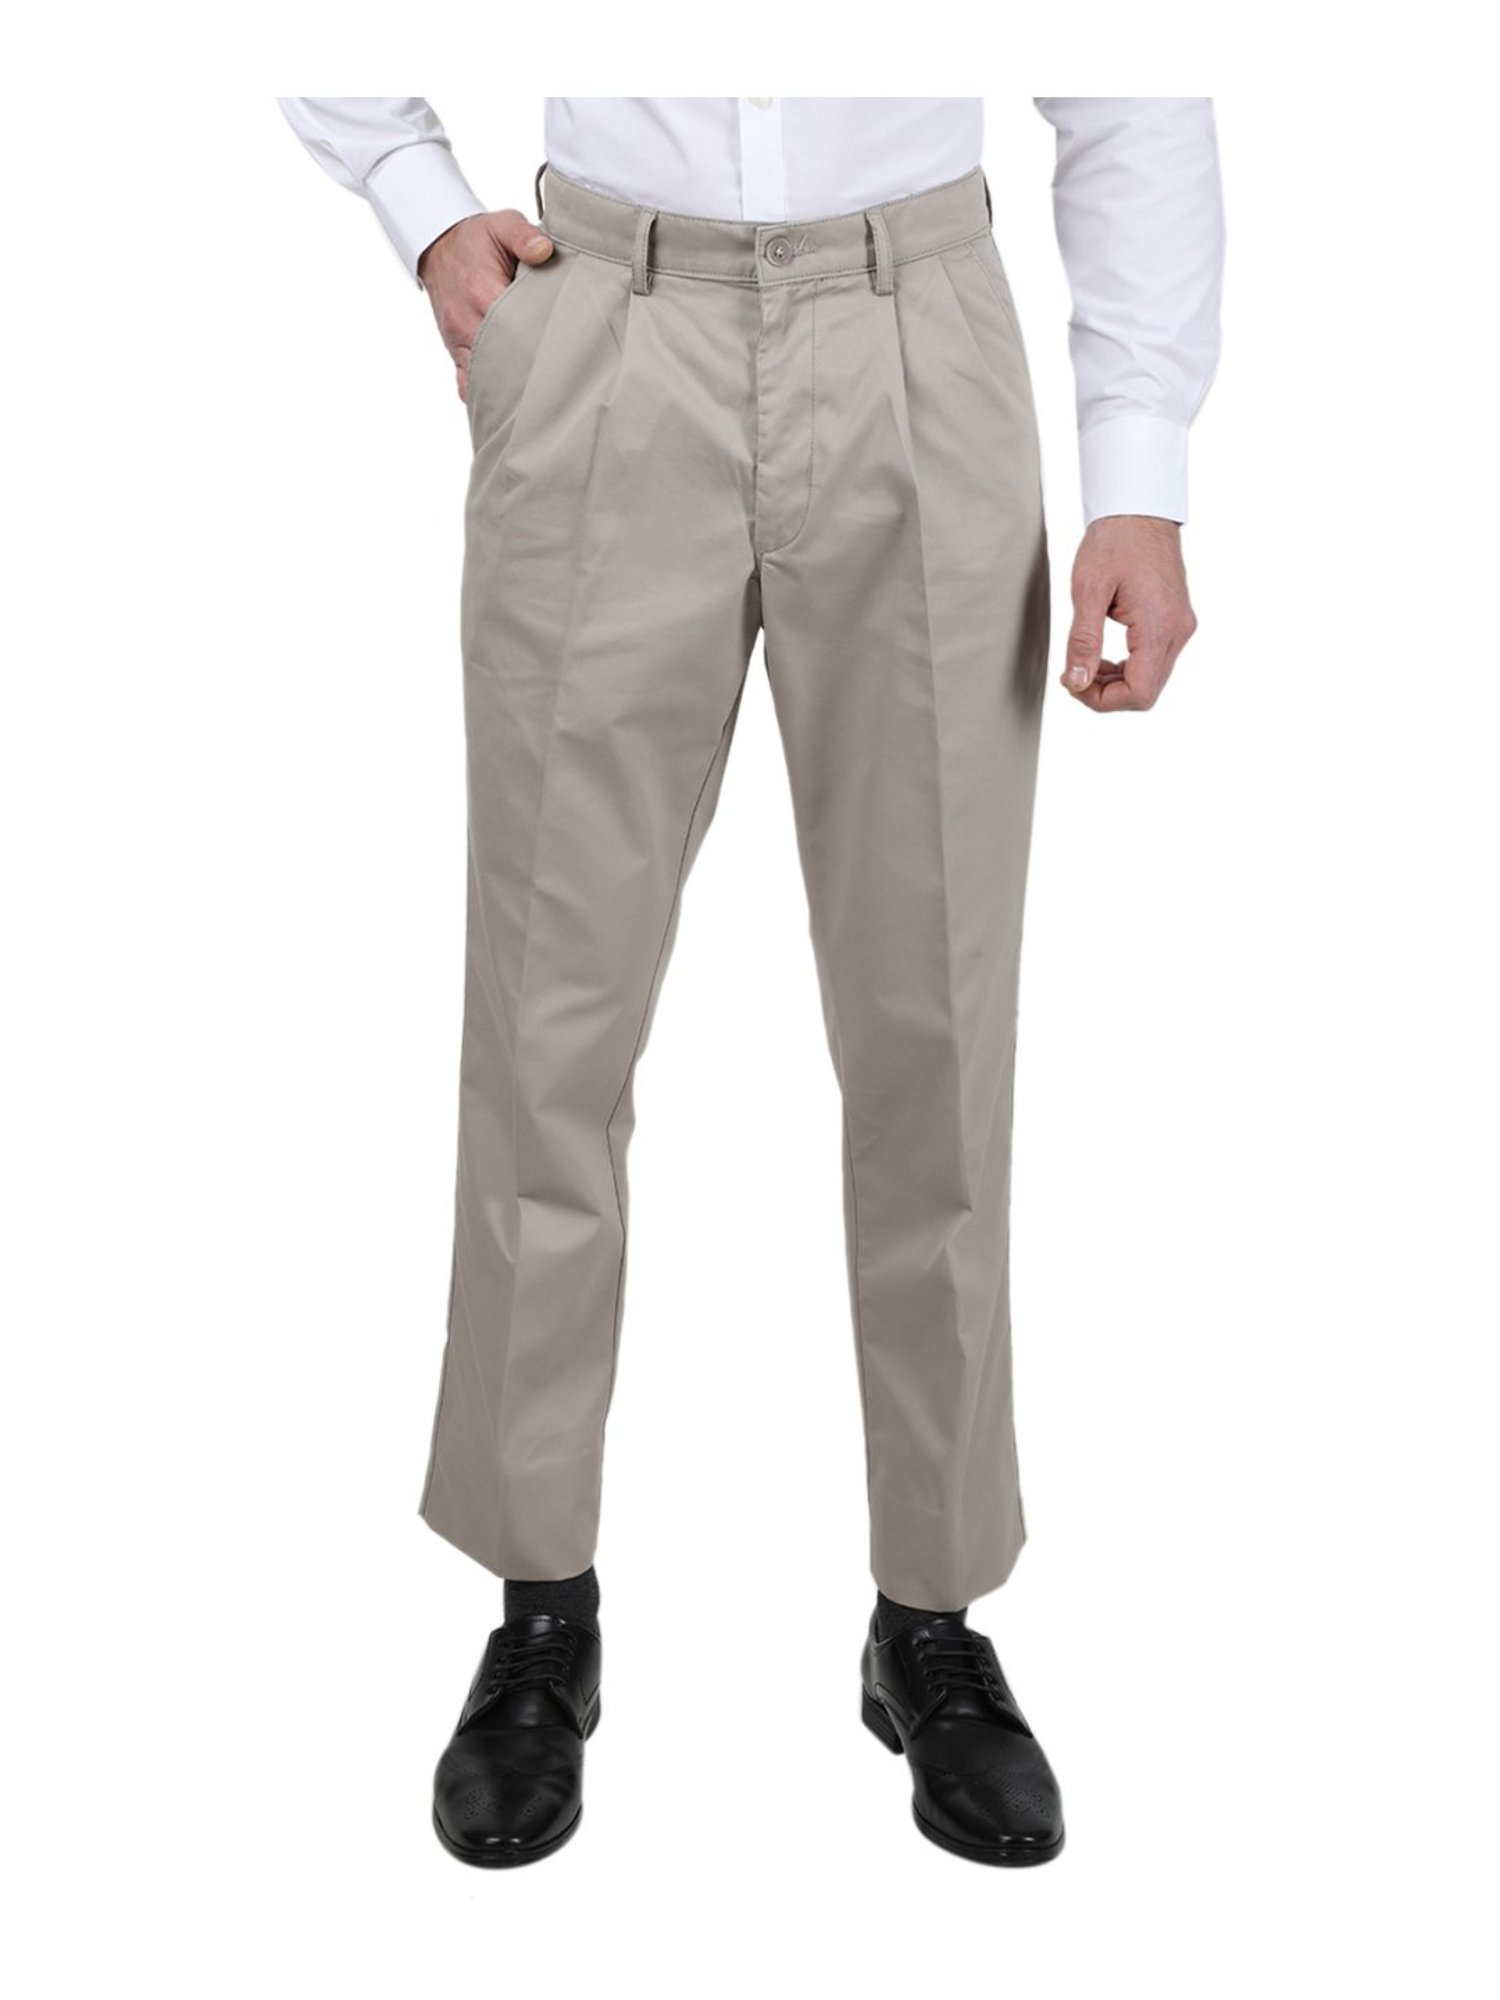 Buy Men Beige Plain Trousers Online in India - Monte Carlo